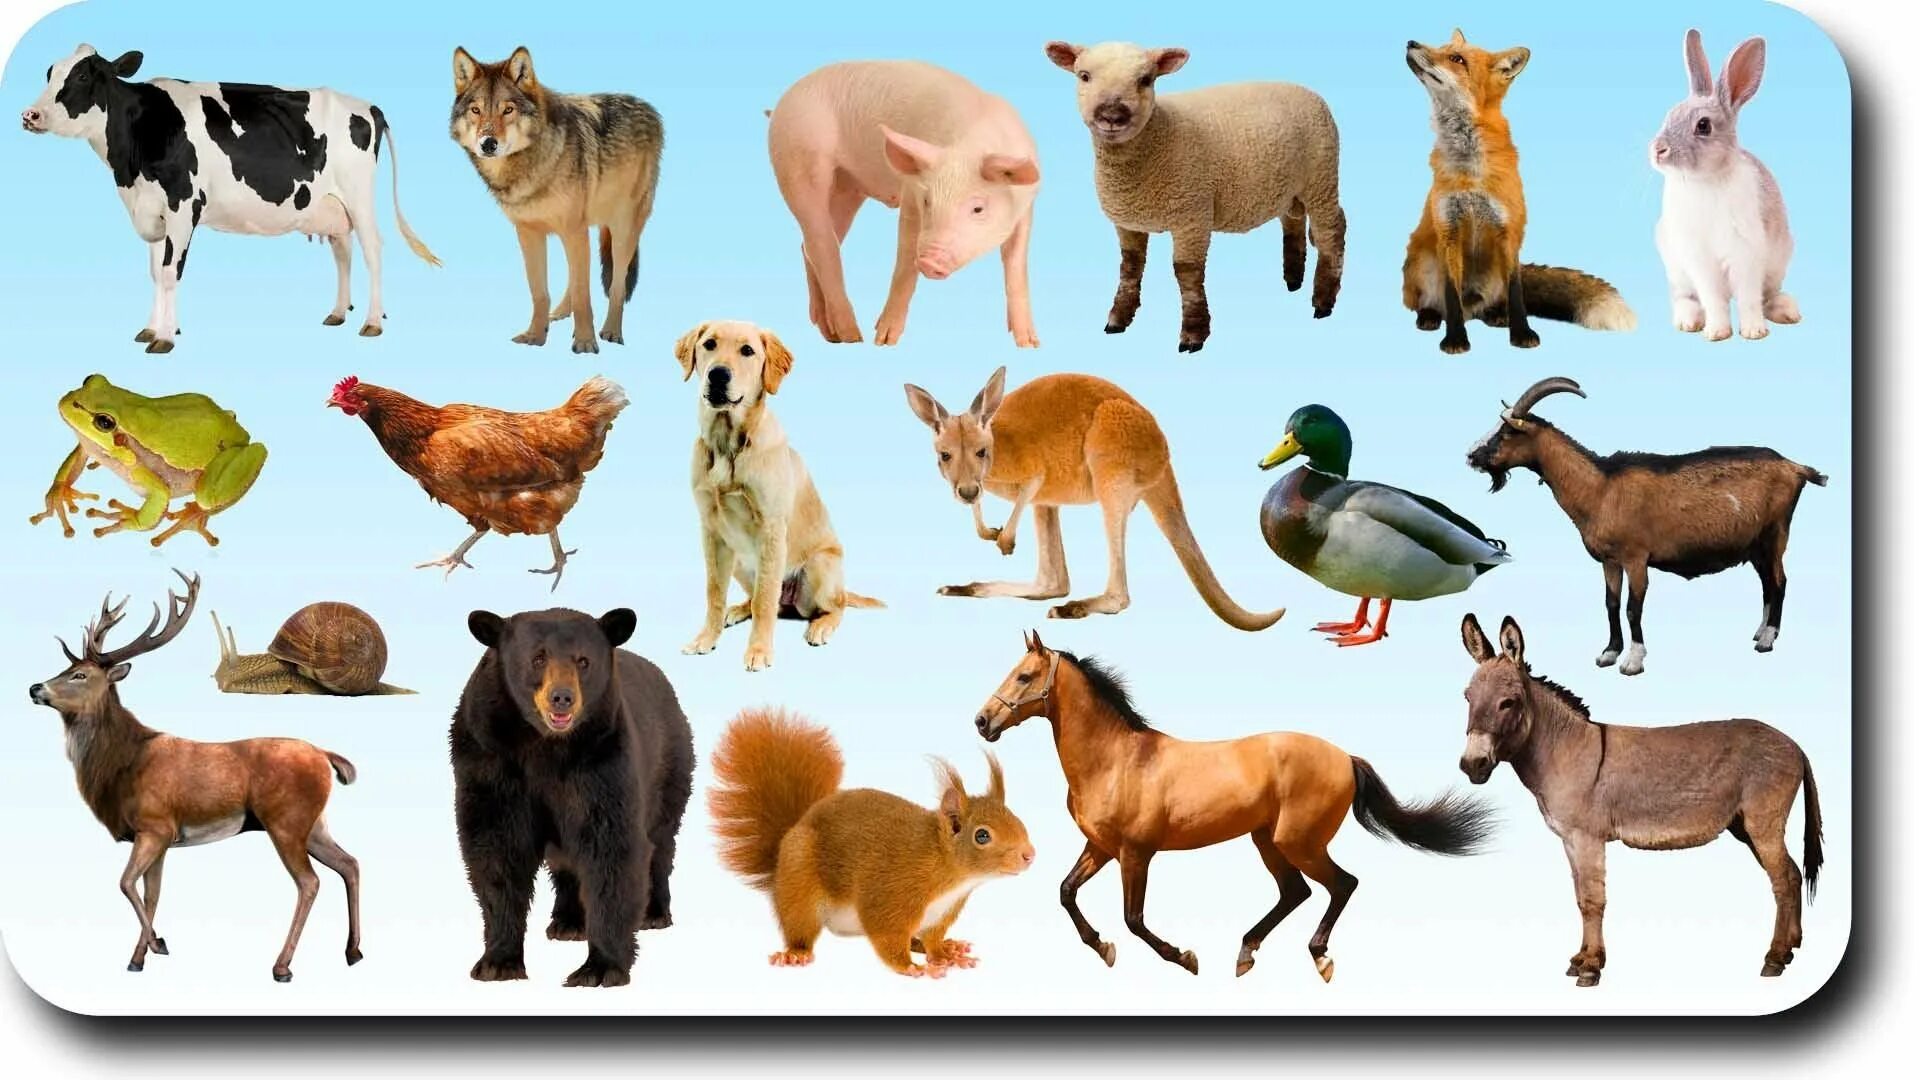 Какие животные можно показать. Дикие и домашние животные. Домашние и Дикие животные для детей. Животные на одной картинке. Домашние иджикие животные.